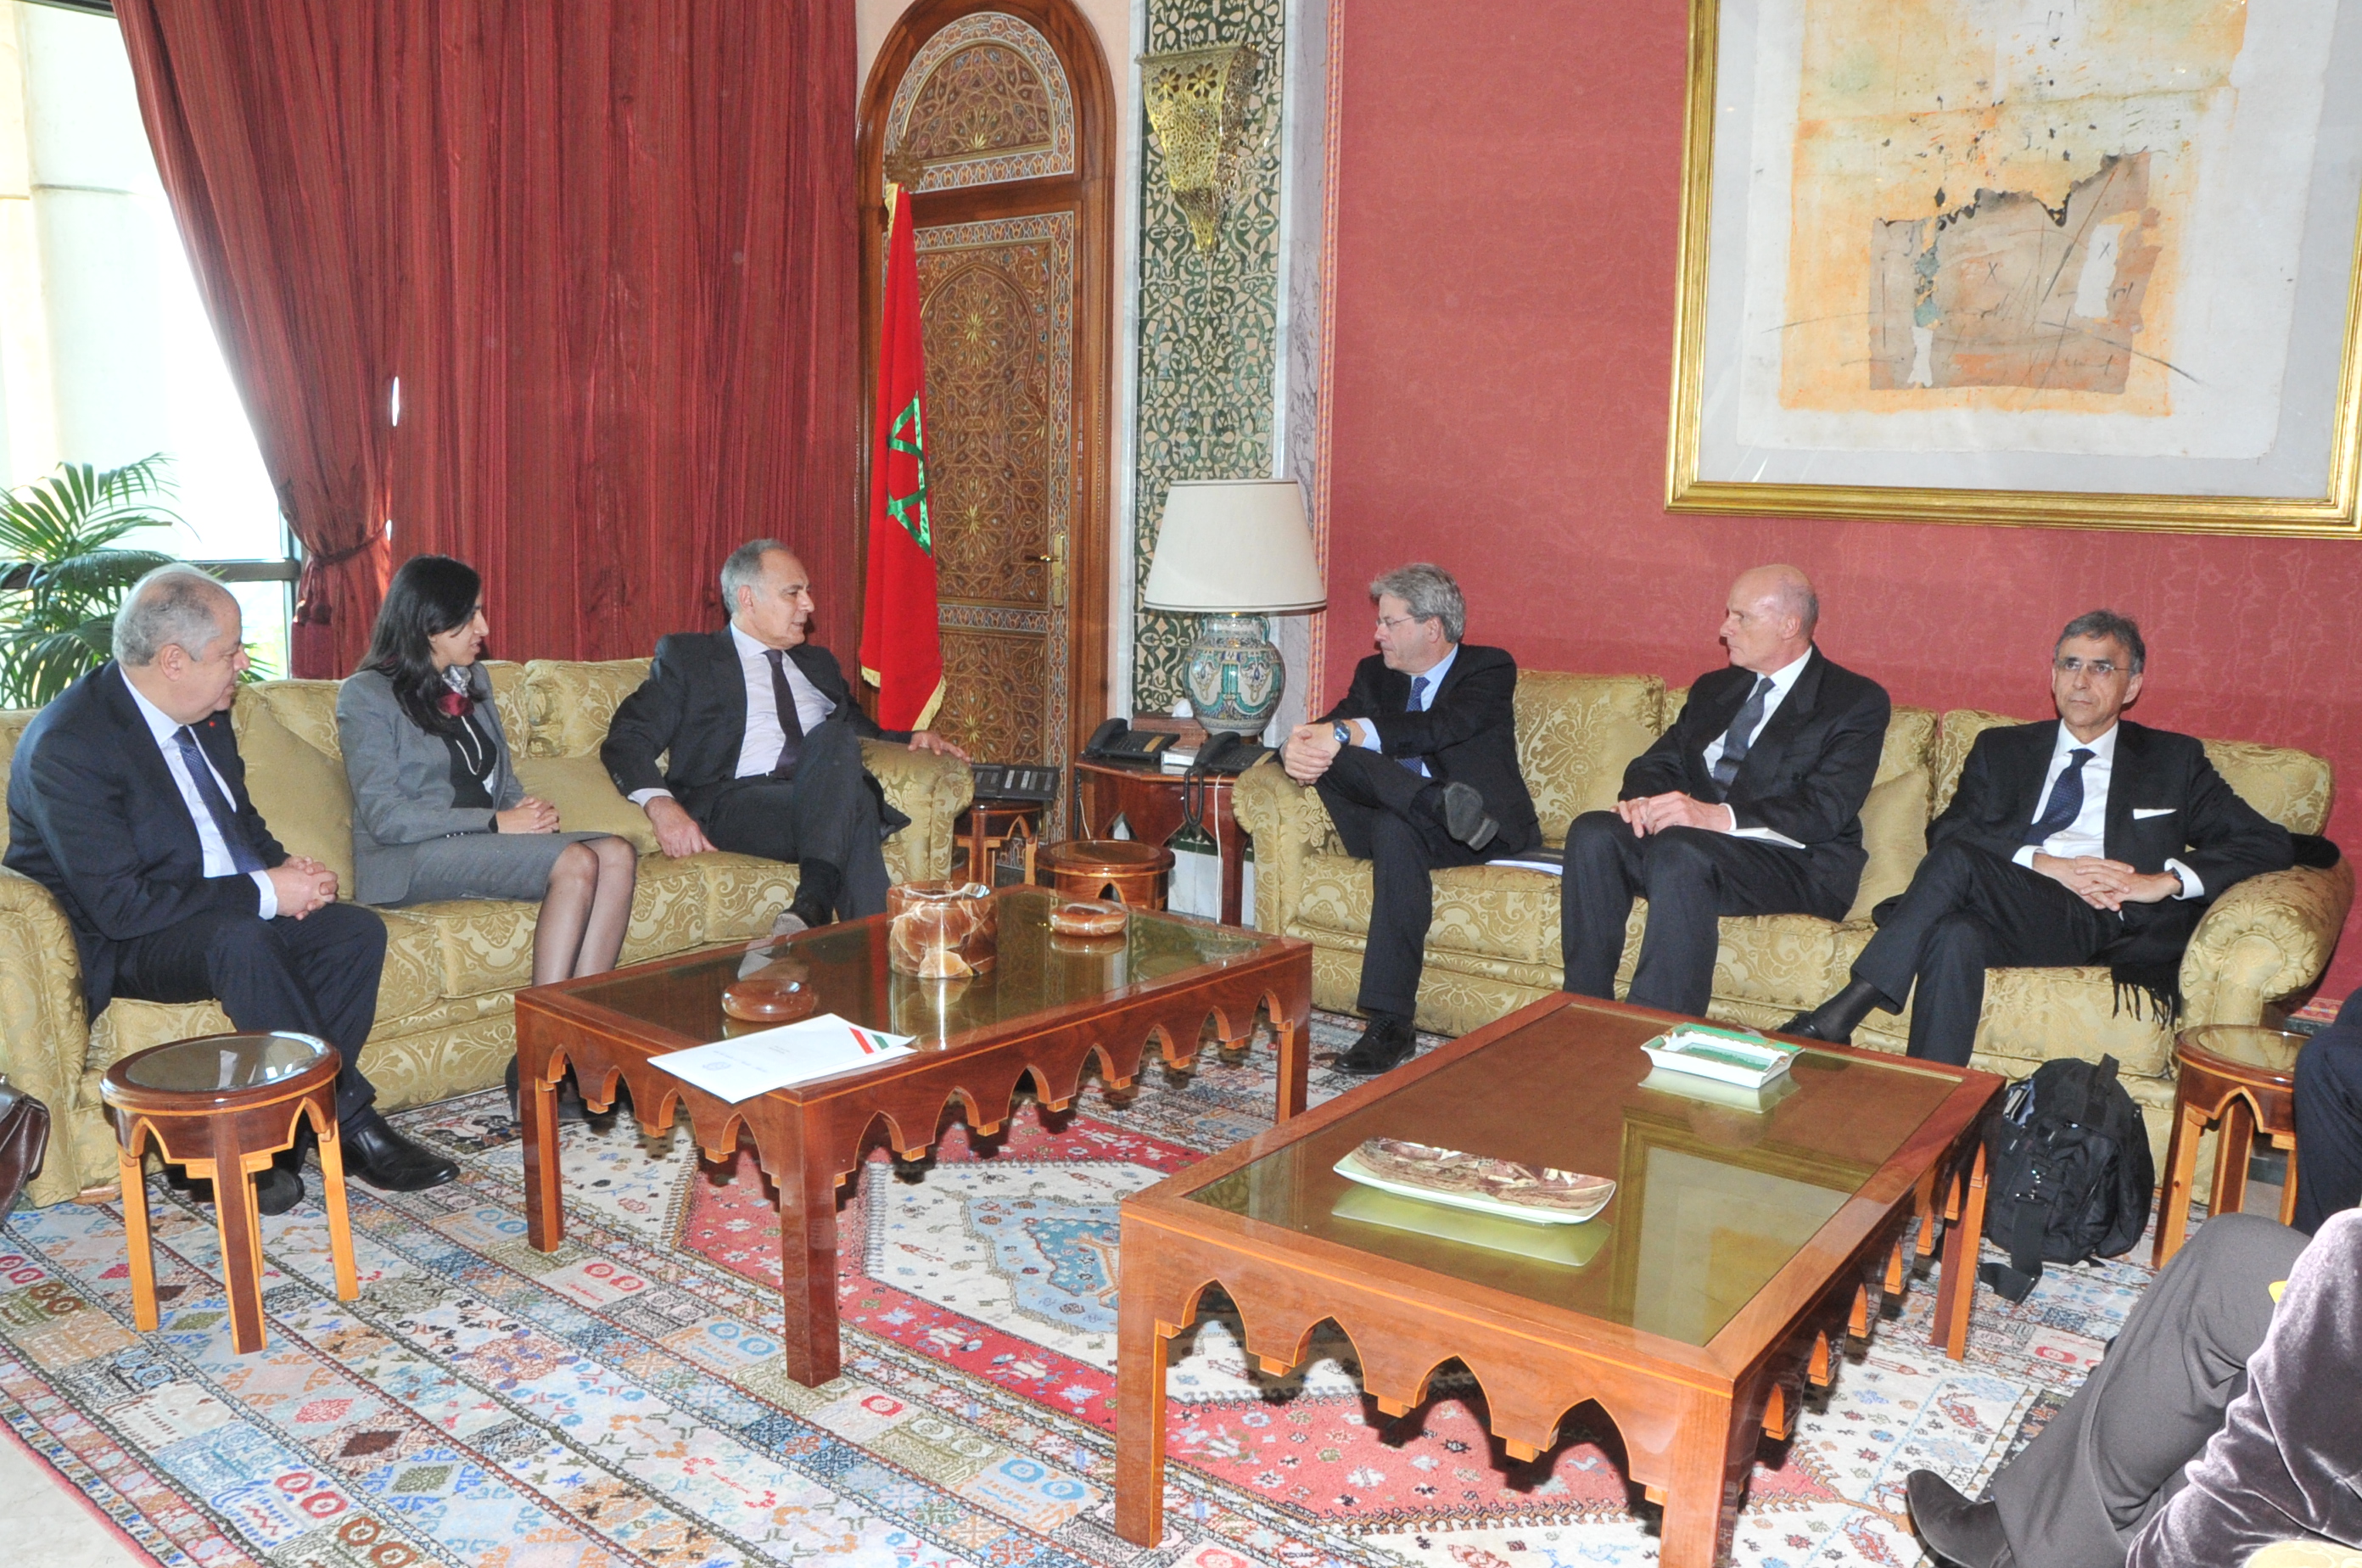 ll ministro Mezouar a colloquio con il ministro Gentiloni. Presenti anche il ministro delegato Sig.ra Bouaida e l’ambasciatore del Marocco in Itlalia Hassan Abouyoub